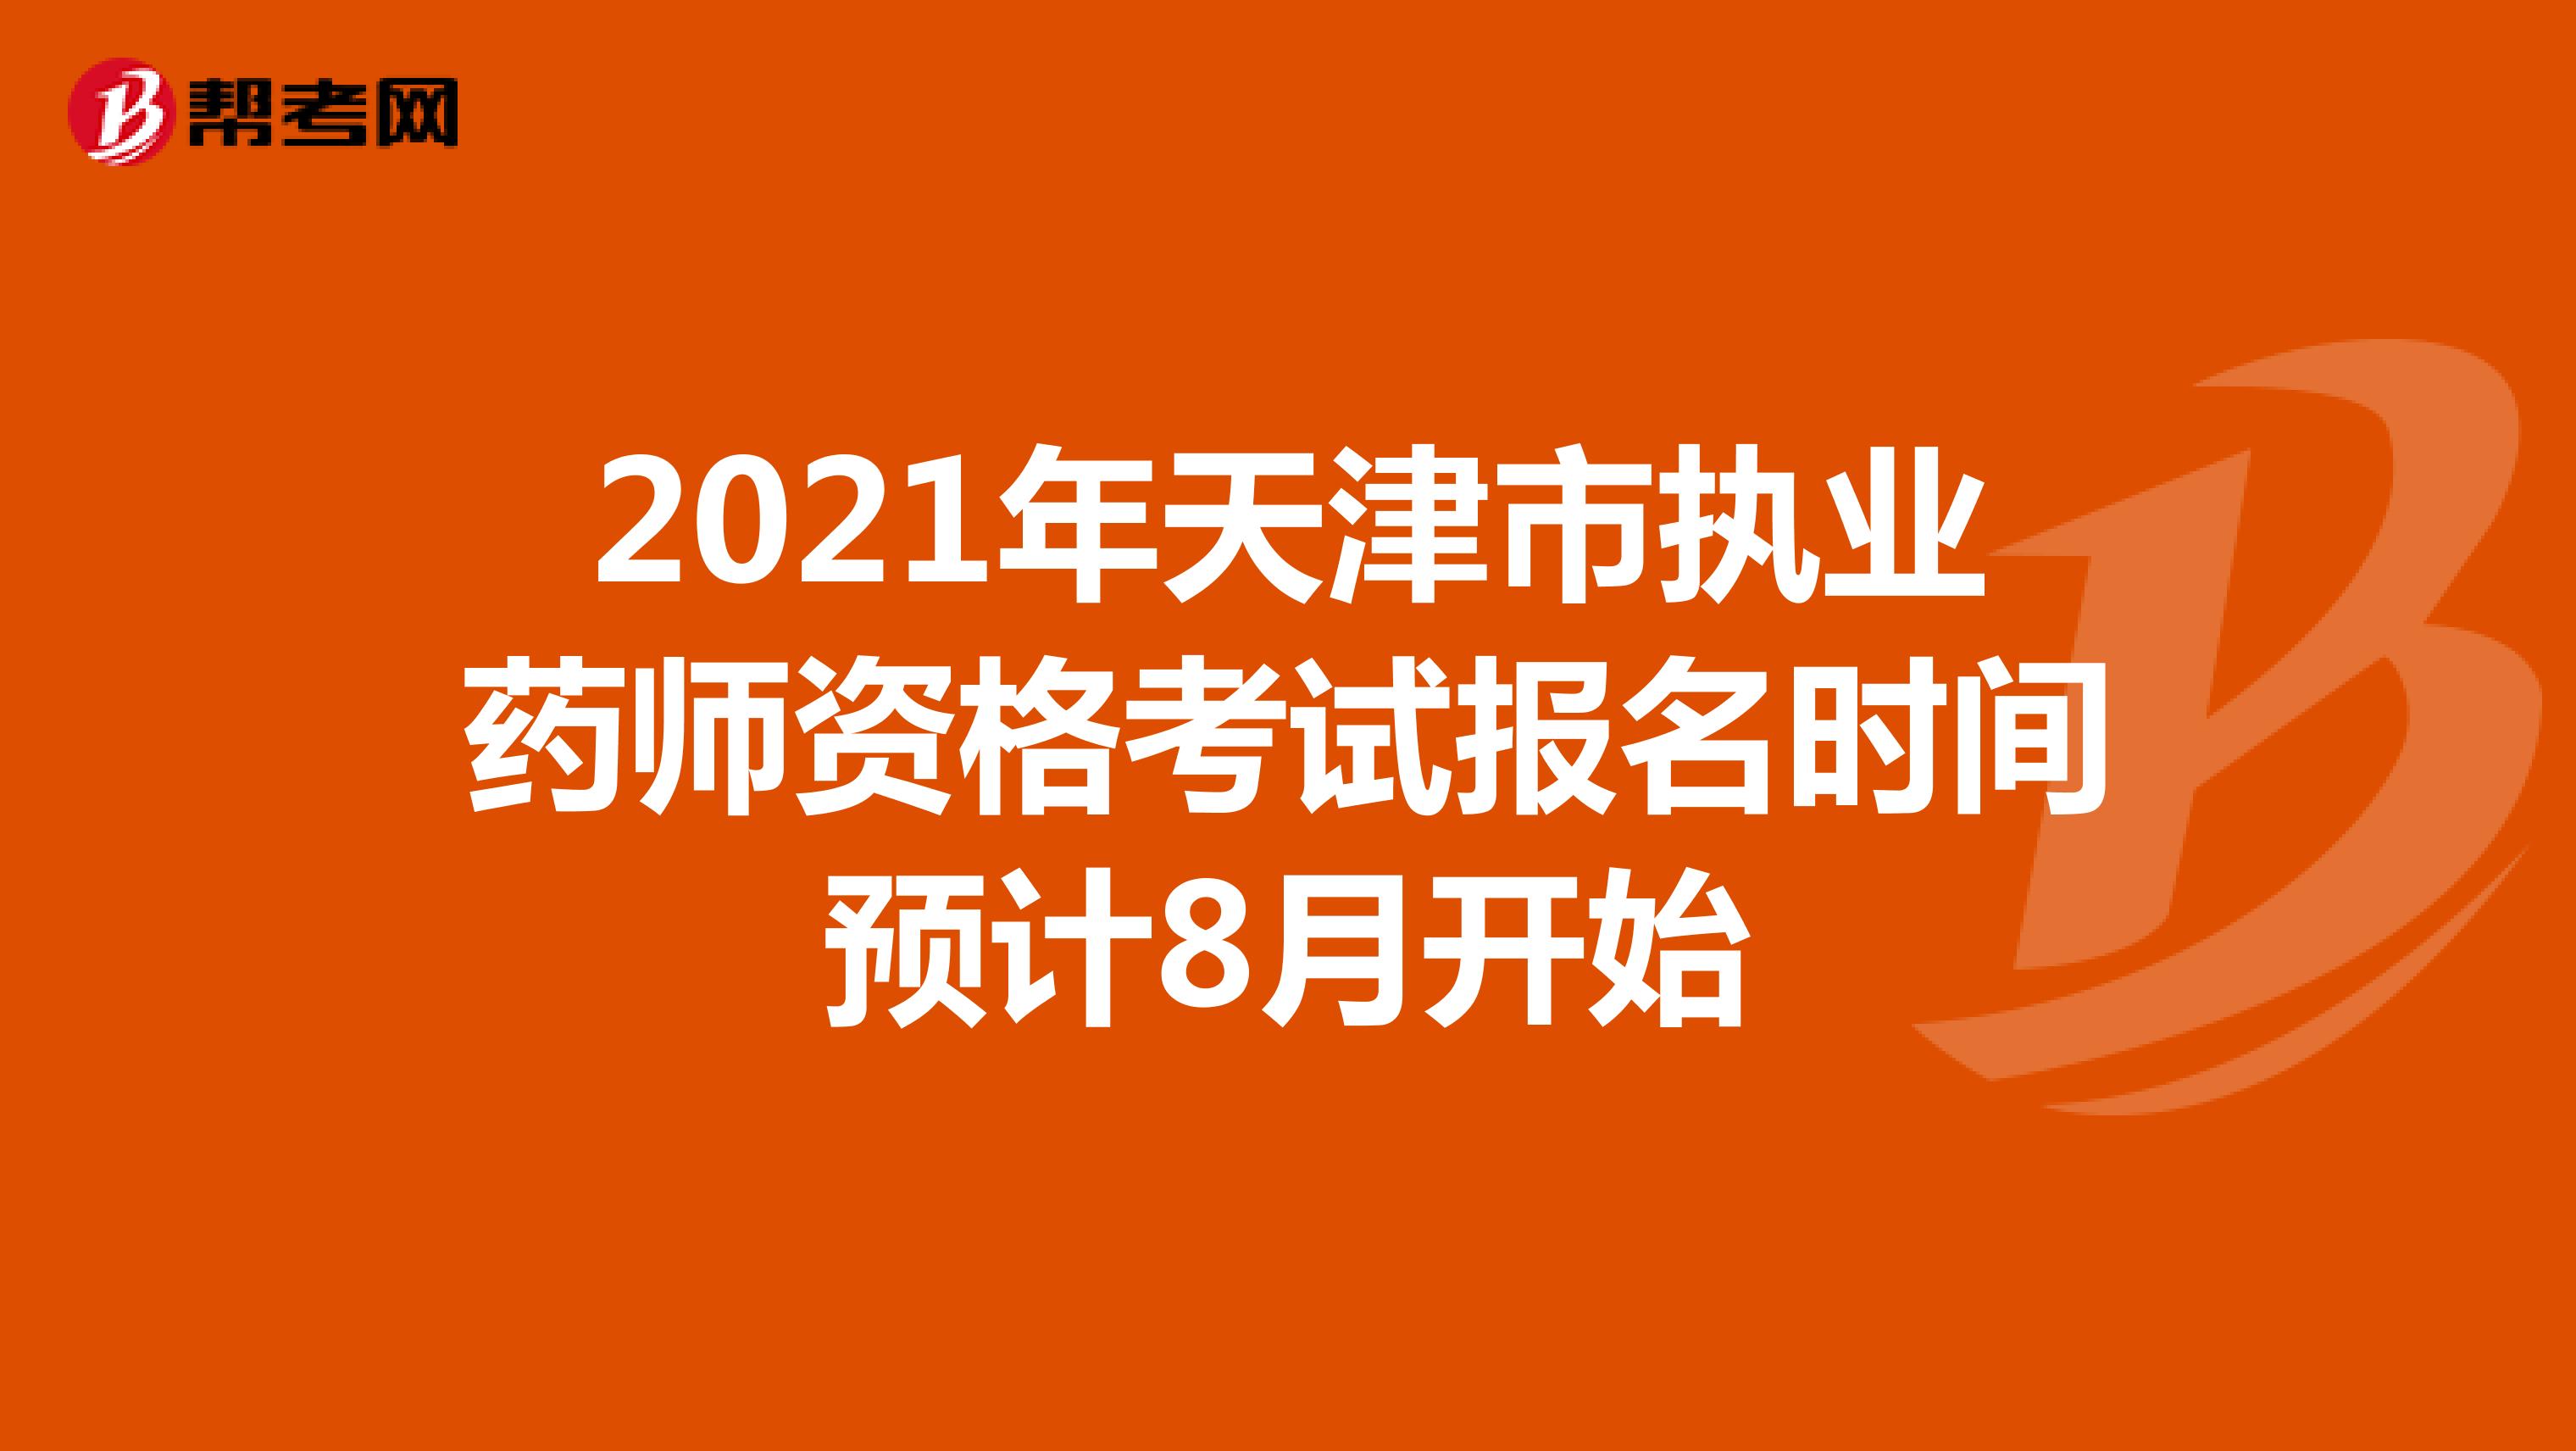 2021年天津市执业药师资格考试报名时间预计8月开始